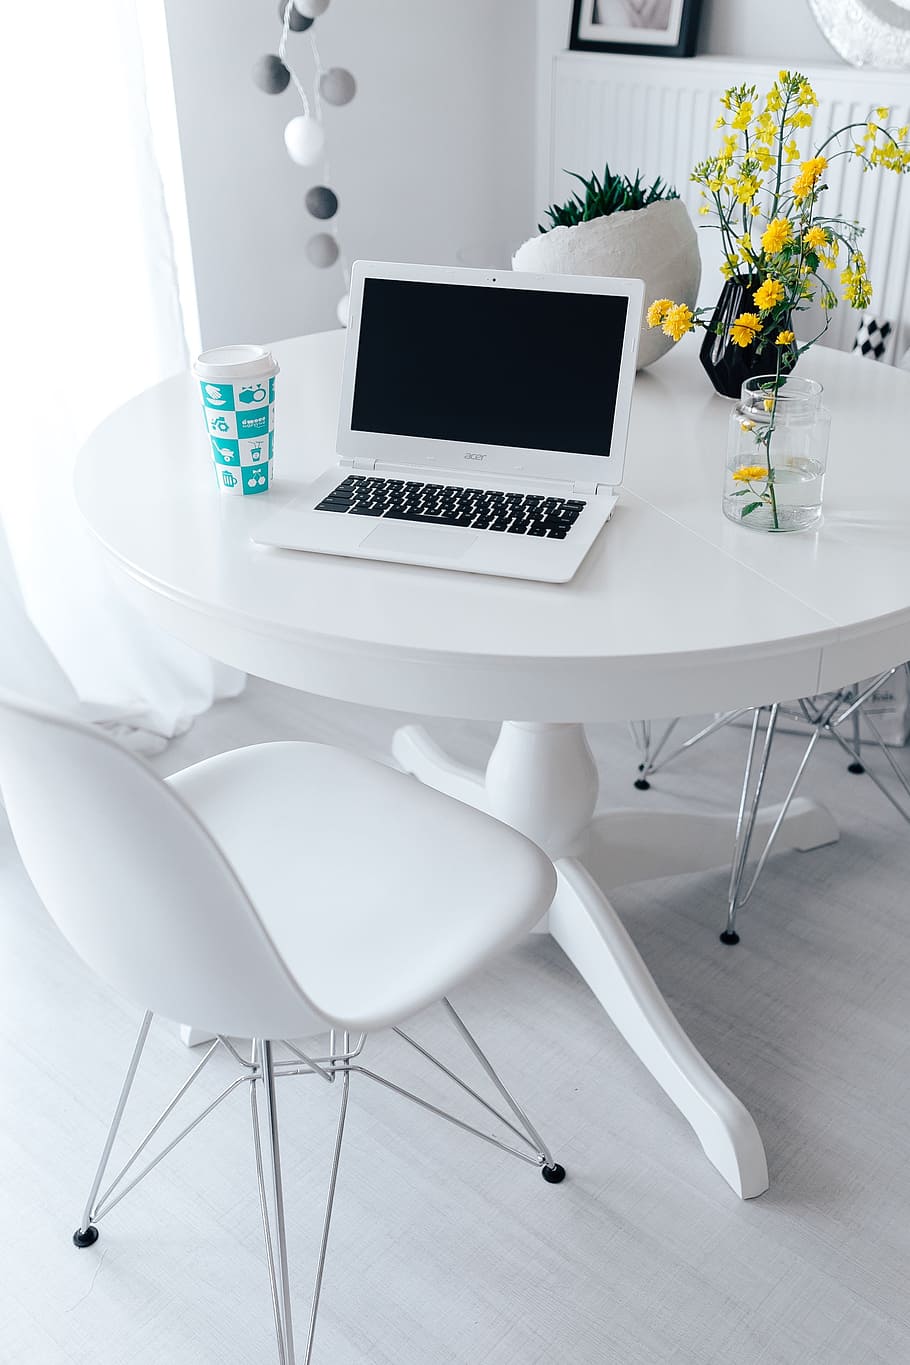 tempat kerja, laptop, meja, rumah, interior, minimal, minimalis, ruang, putih, kantor